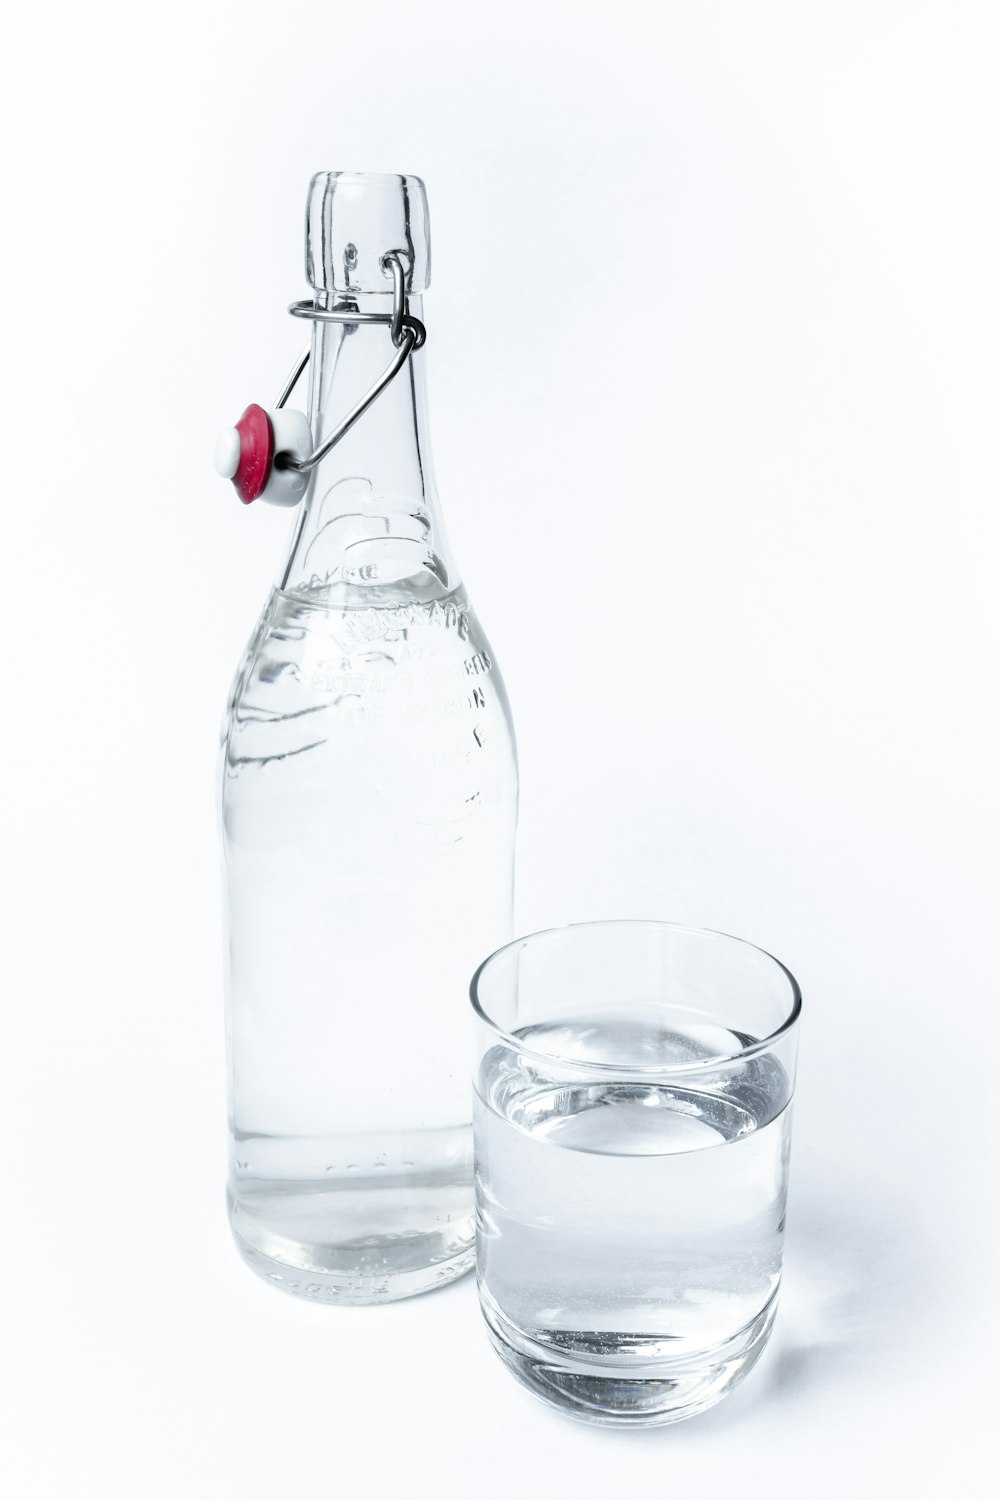 コップ一杯の水の隣にある水のボトル